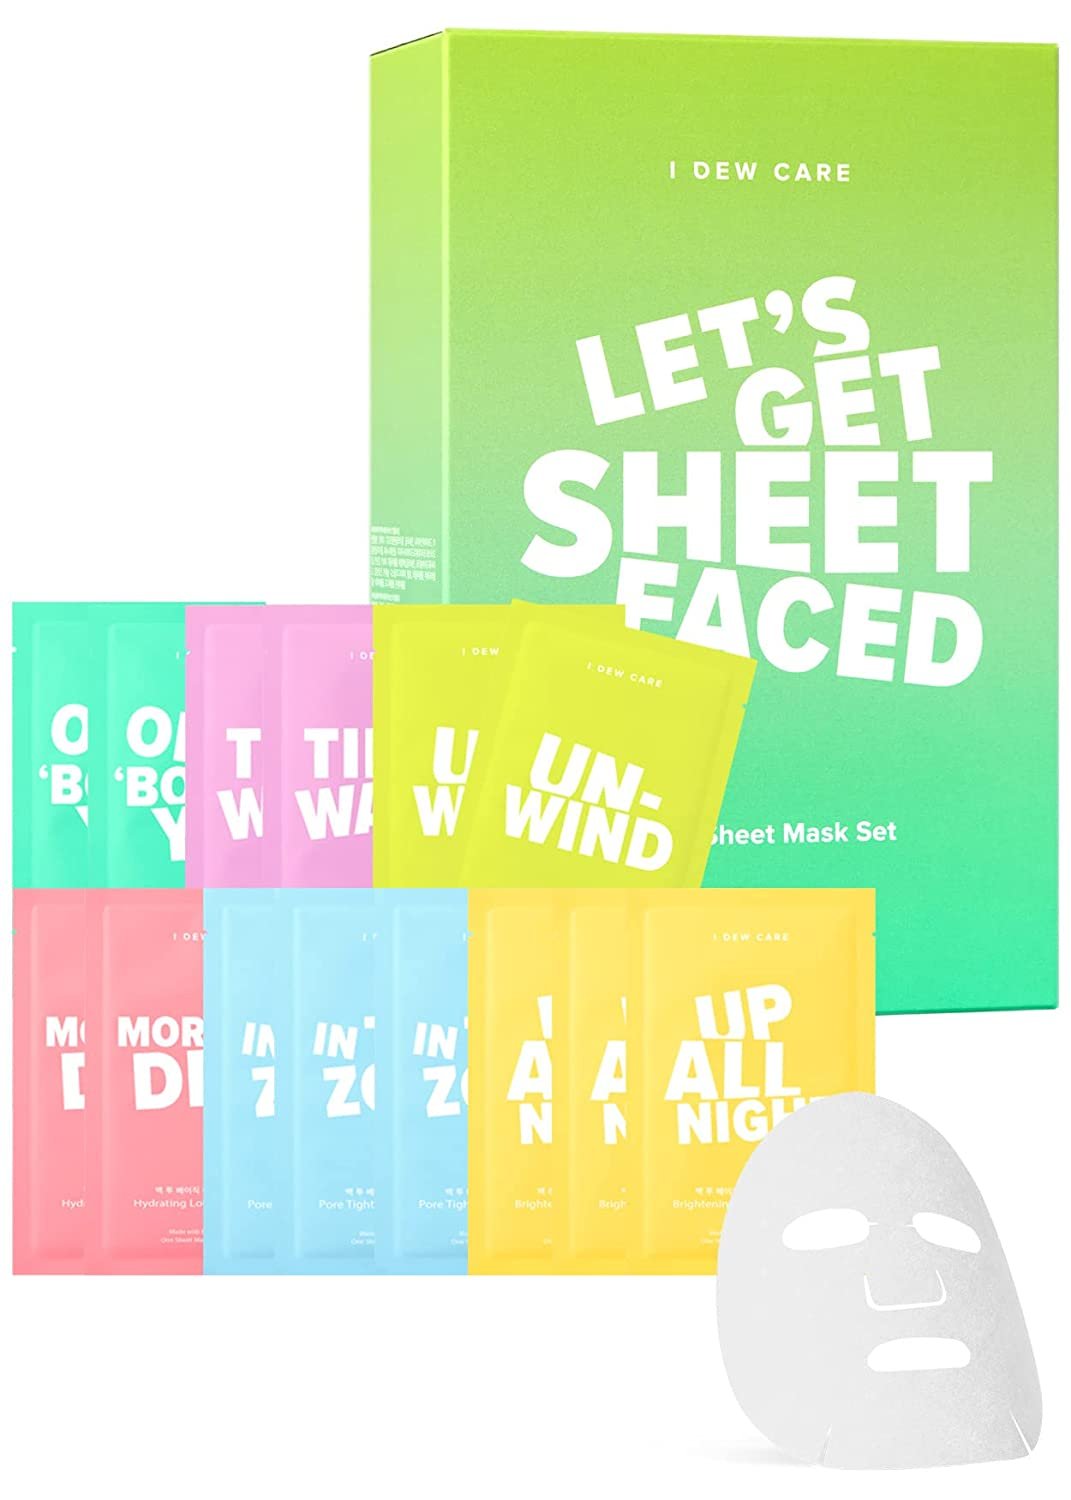 I Dew Care Sheet Mask Pack - Let’s Get Sheet Faced